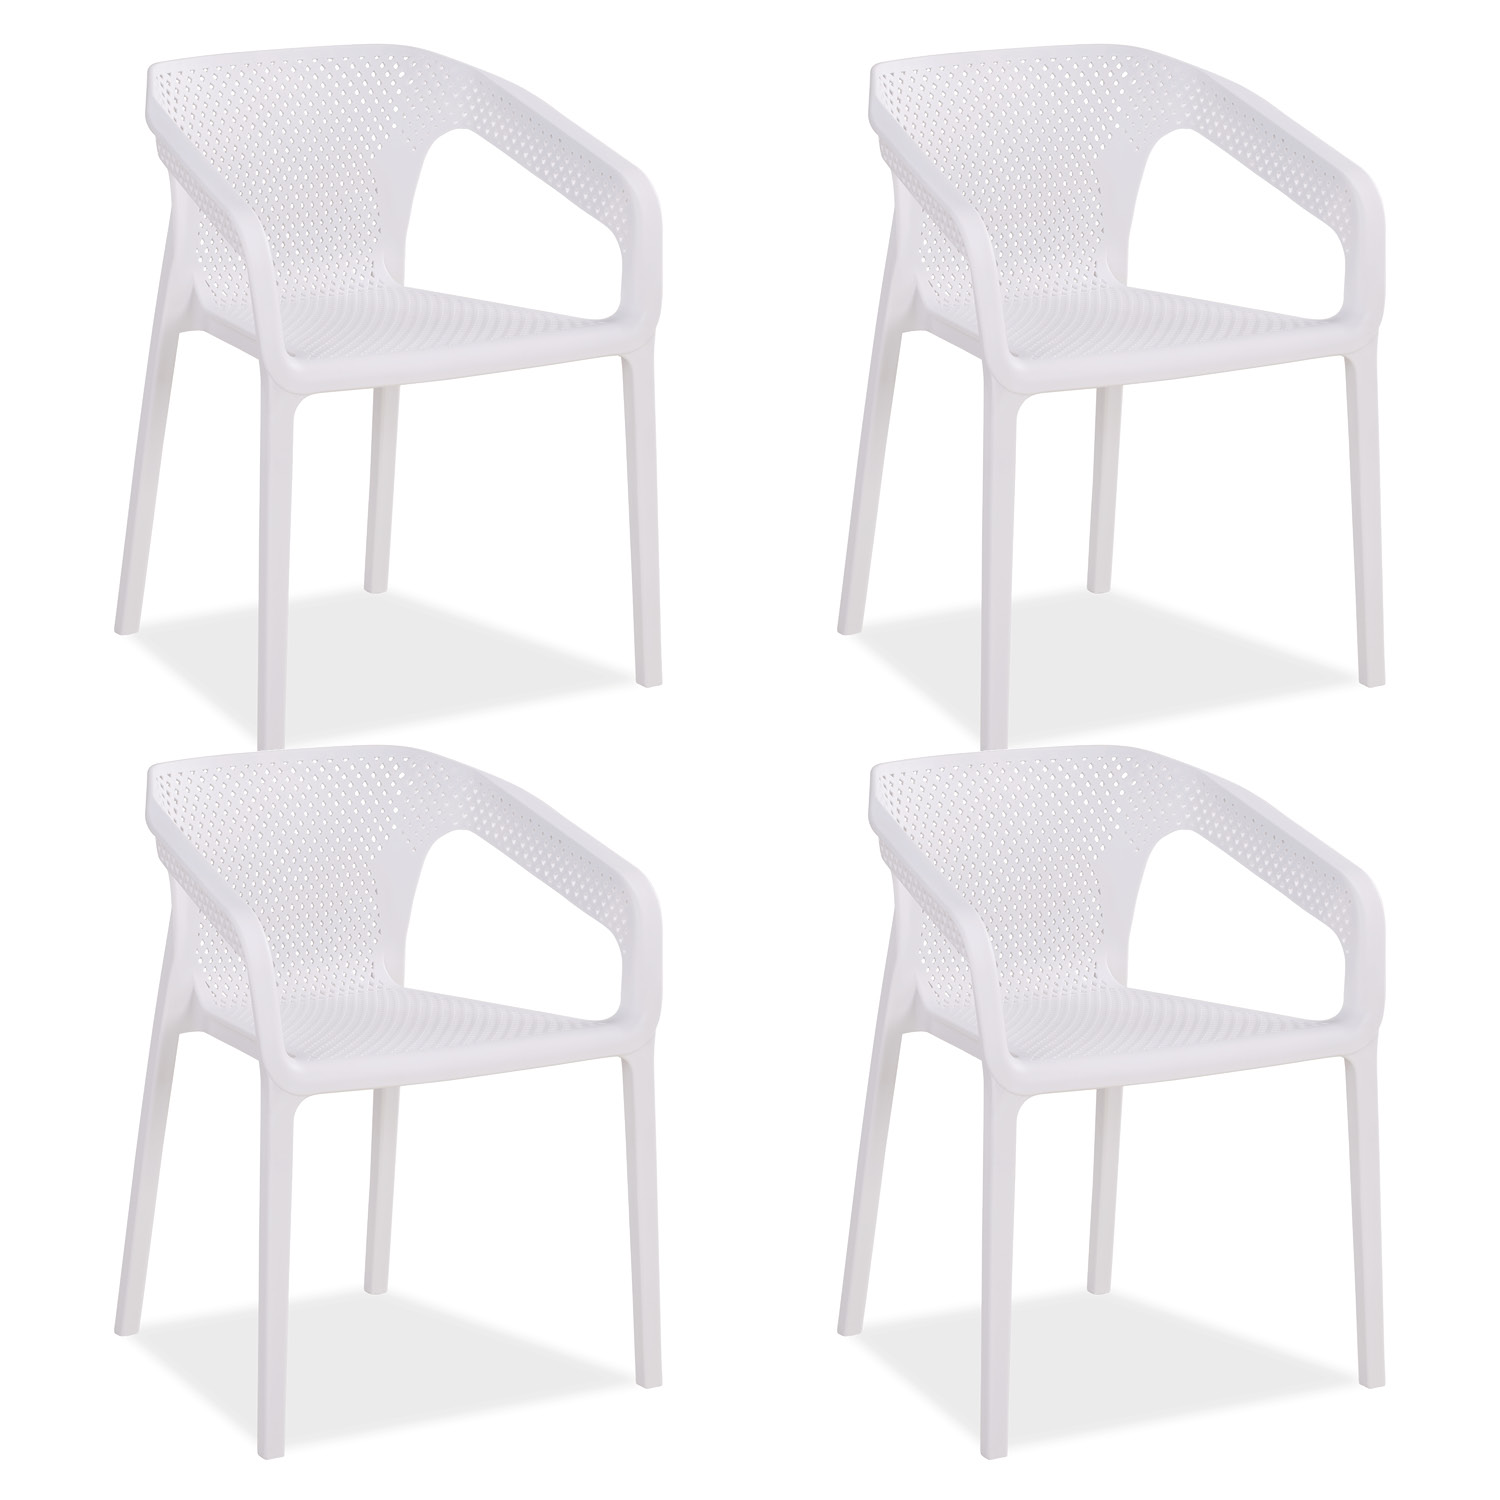 Chaise de jardin avec accoudoirs Blanc Lot de 4 Fauteuils de jardin Plastique Chaises exterieur Chaises empilable